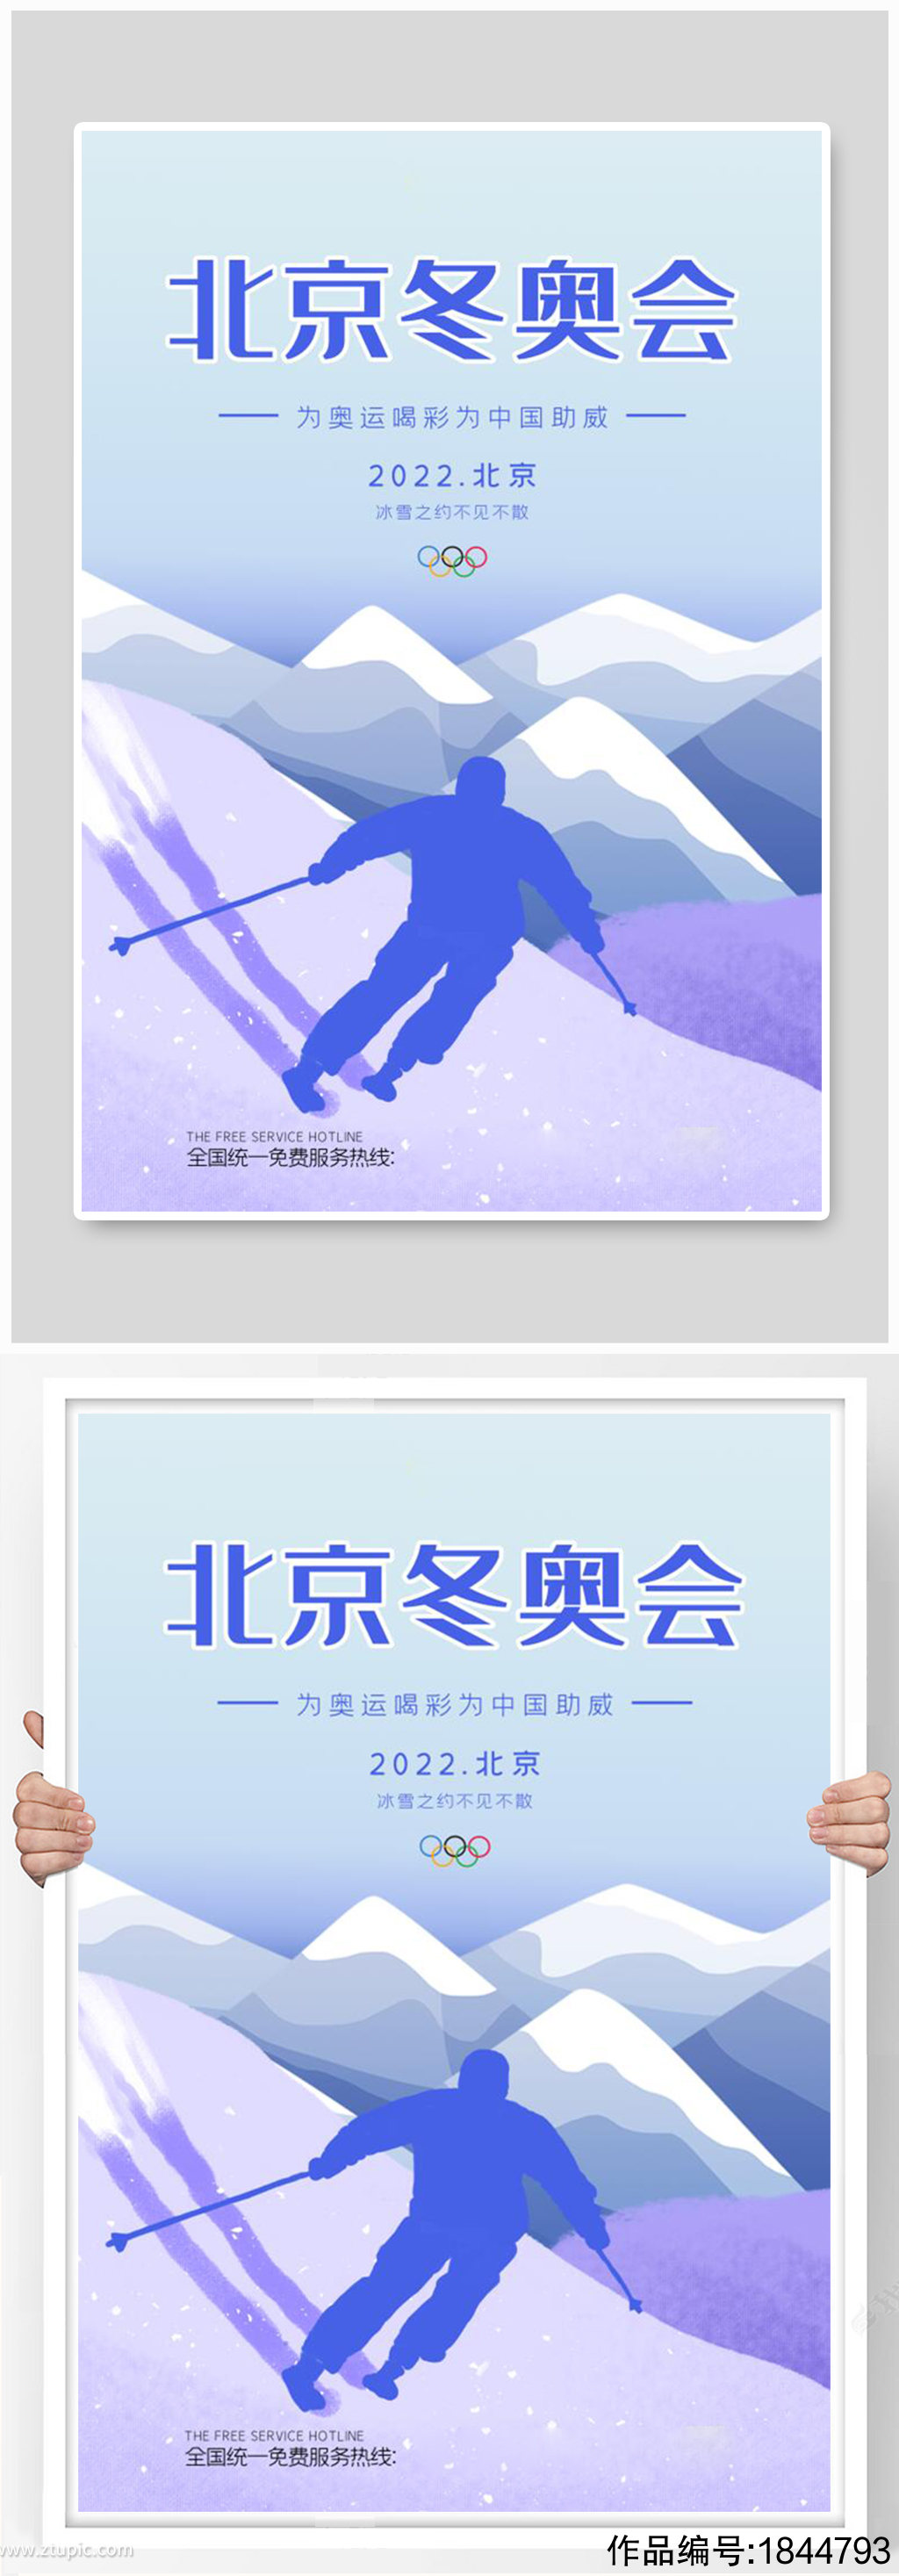 北京冬奥会蓝色大气海报